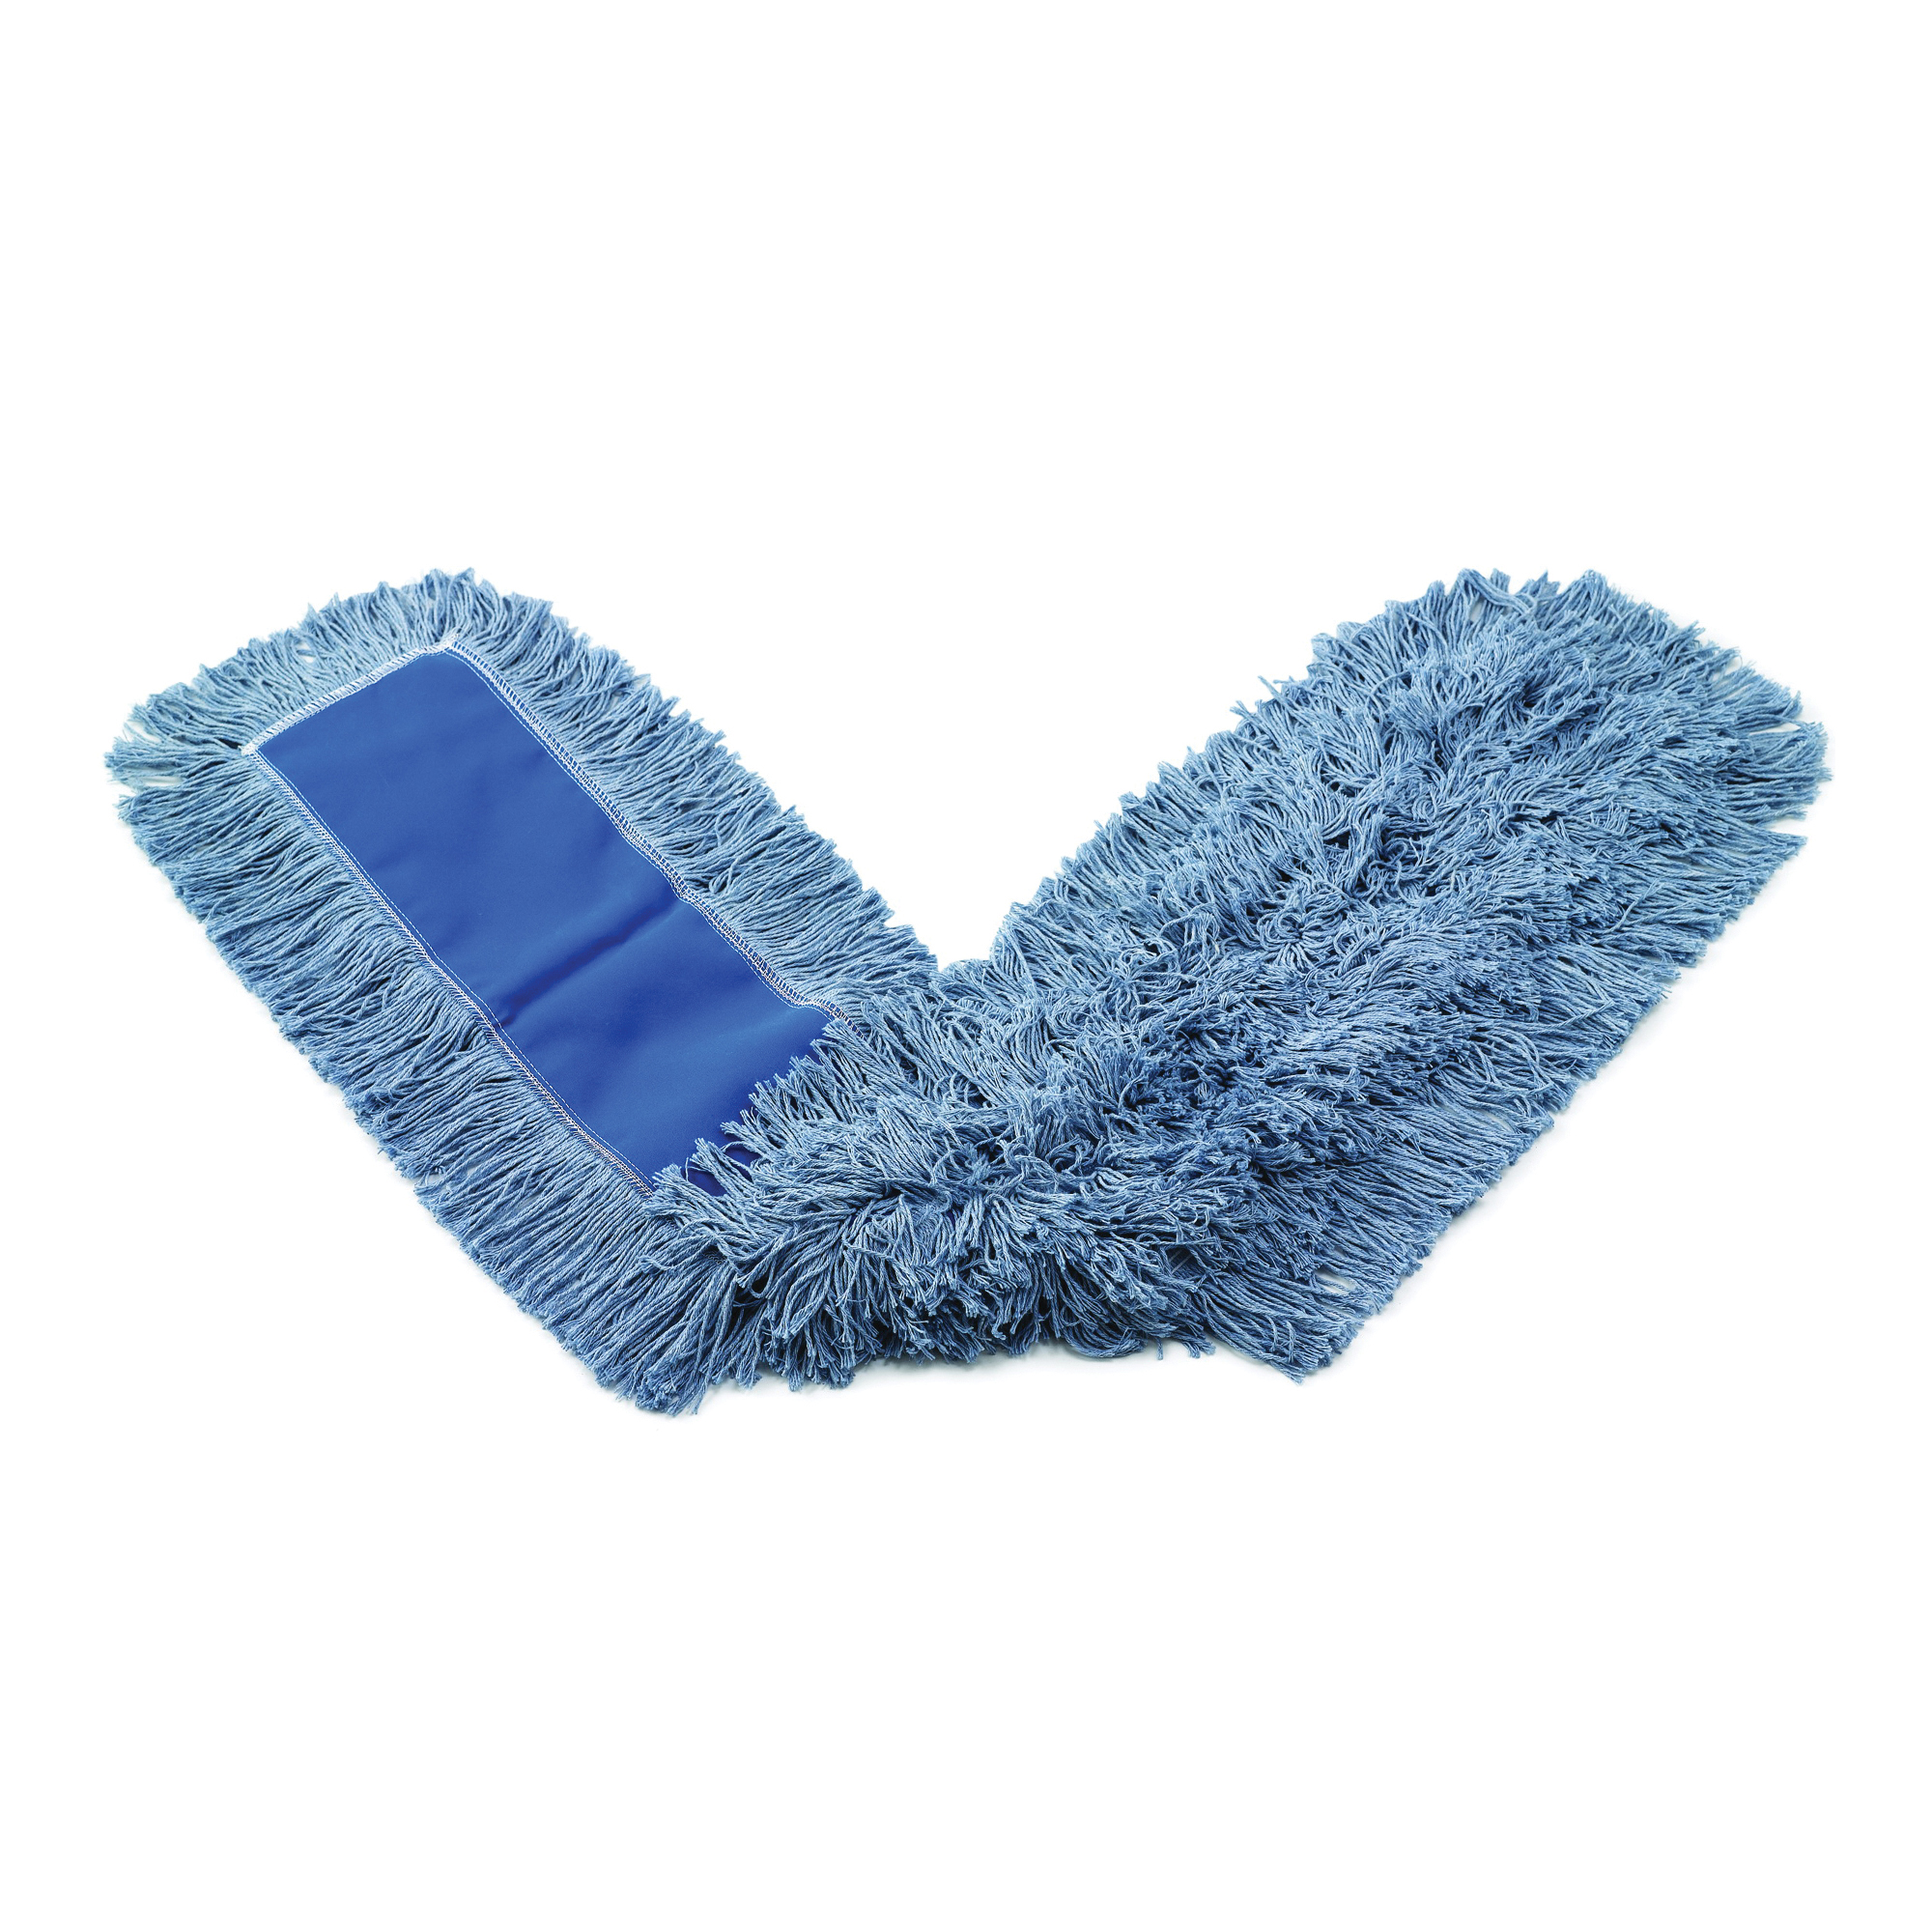 Rubbermaid® FGK15500 BL00 K155 Cut-End Dust Mop, 36 in L x 5 in W, Synthetic, Blue